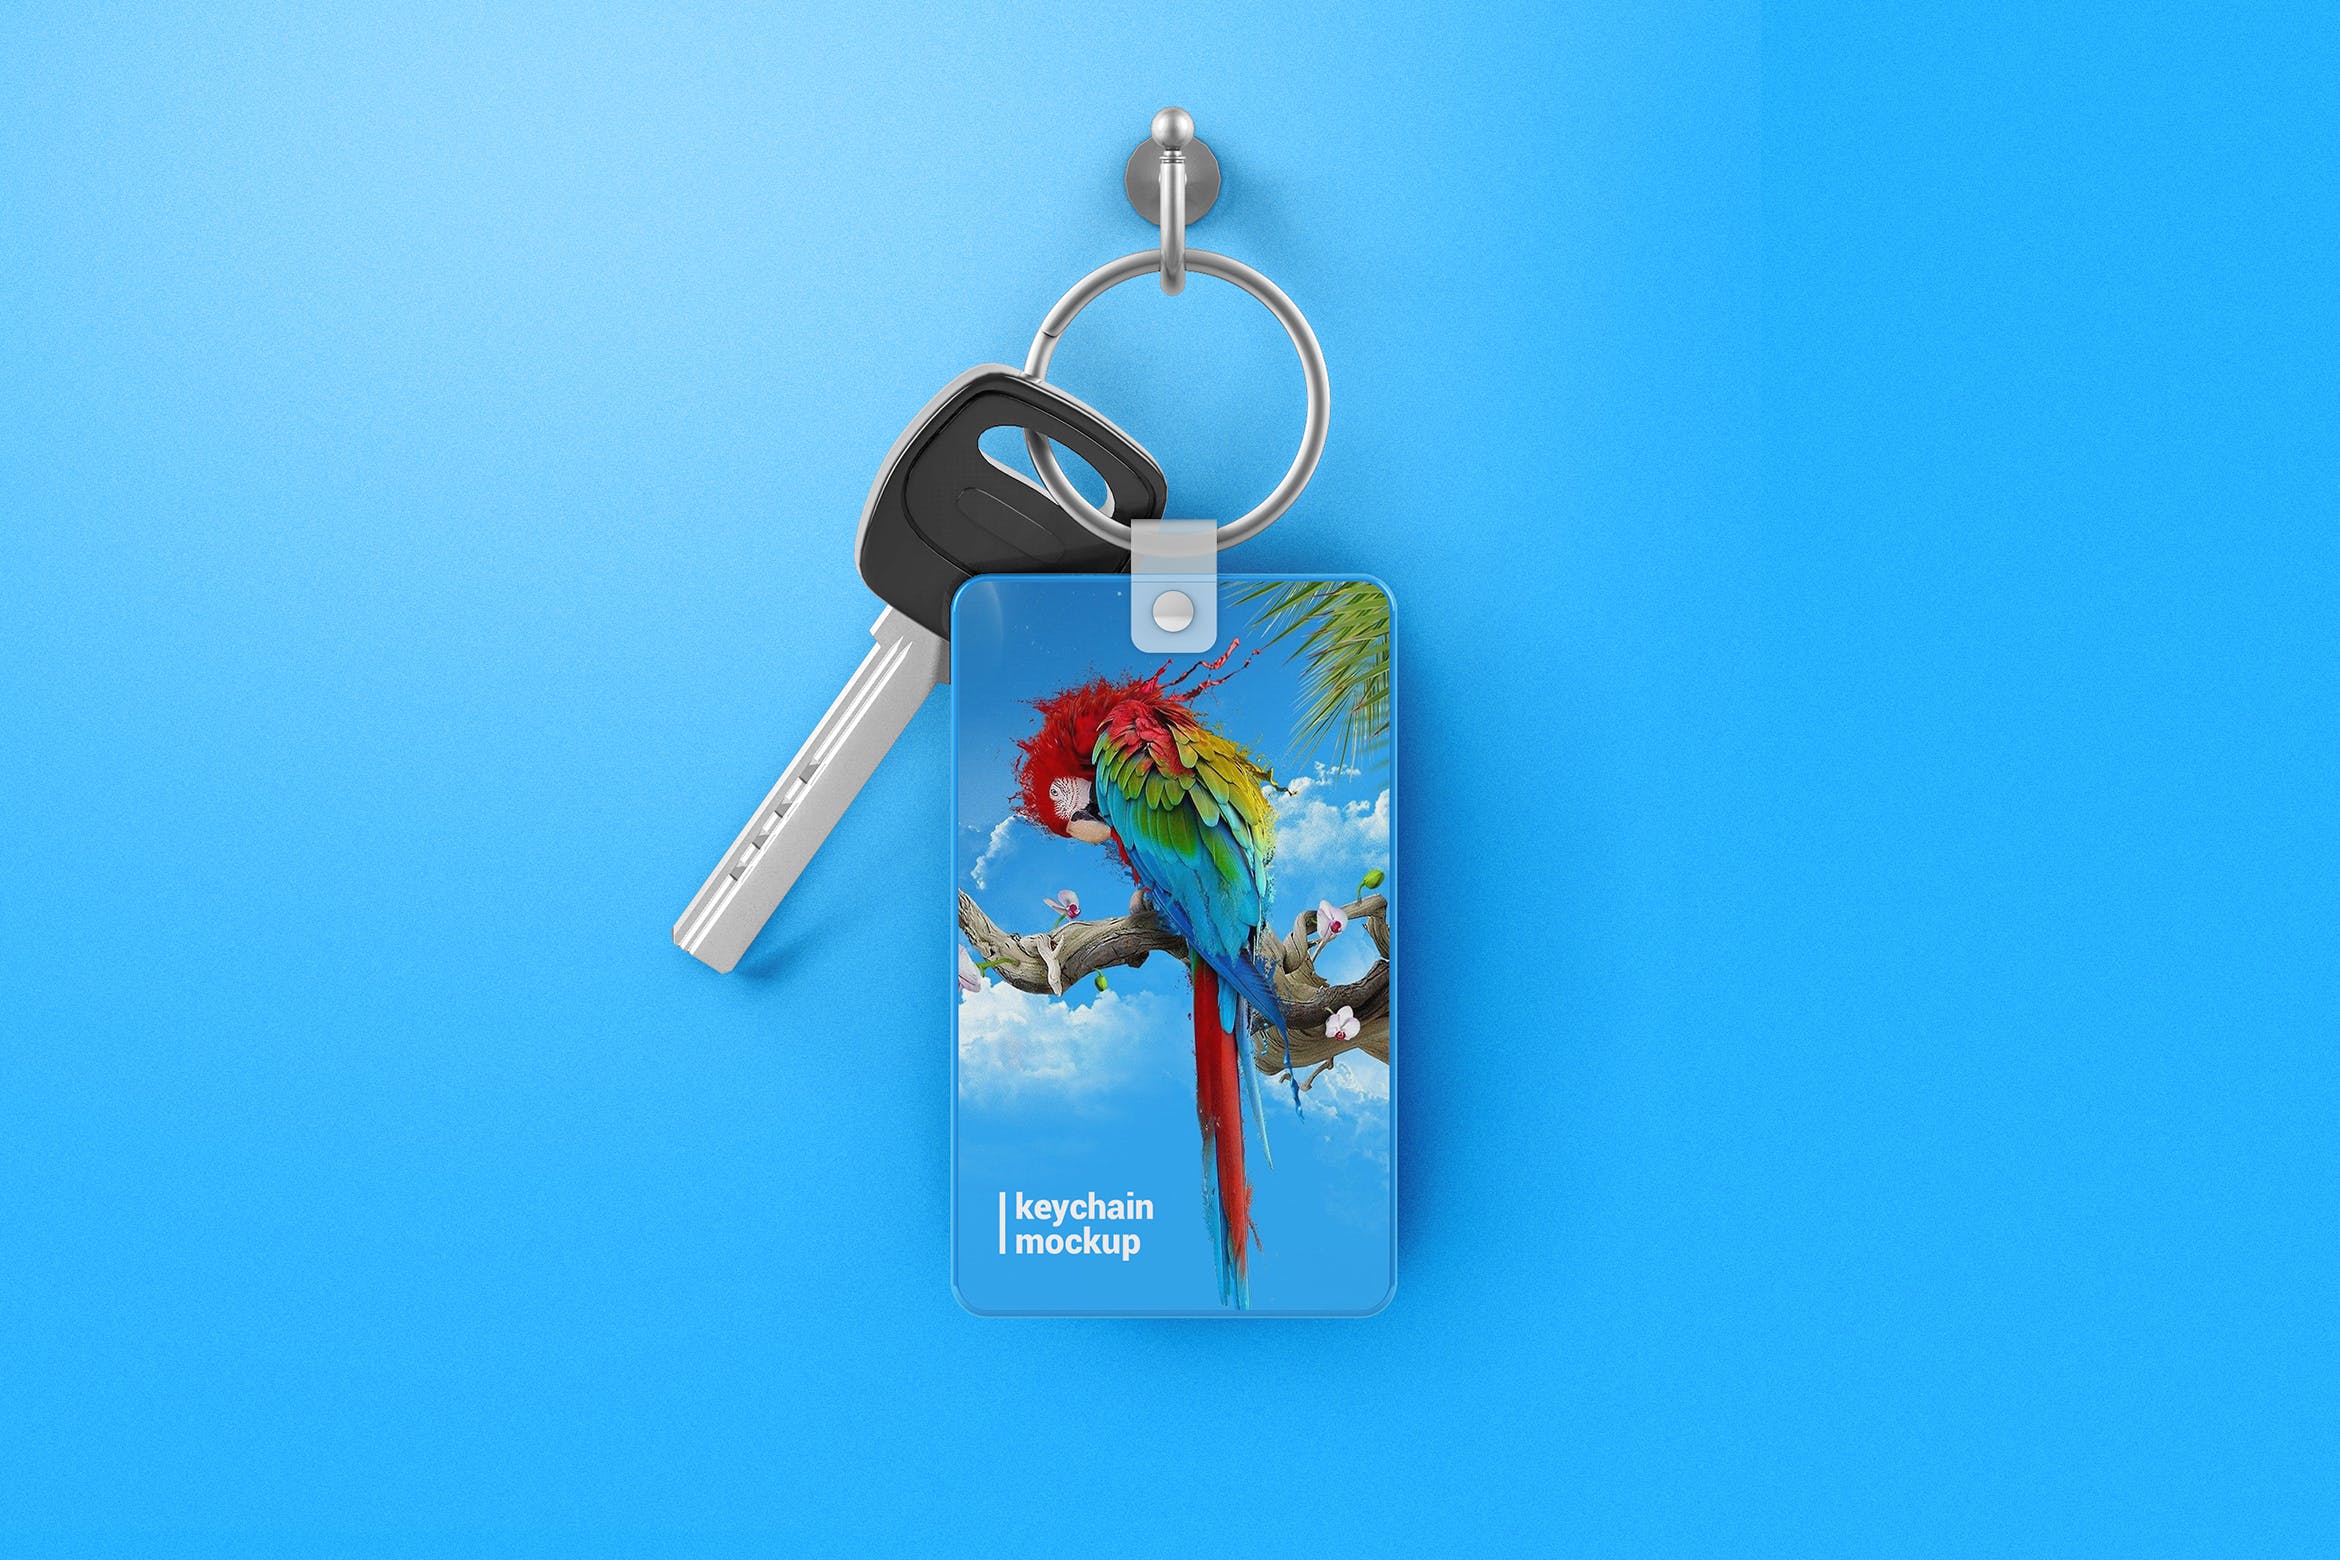 钥匙扣吊牌设计素材库精选模板 Keychain Mockup插图